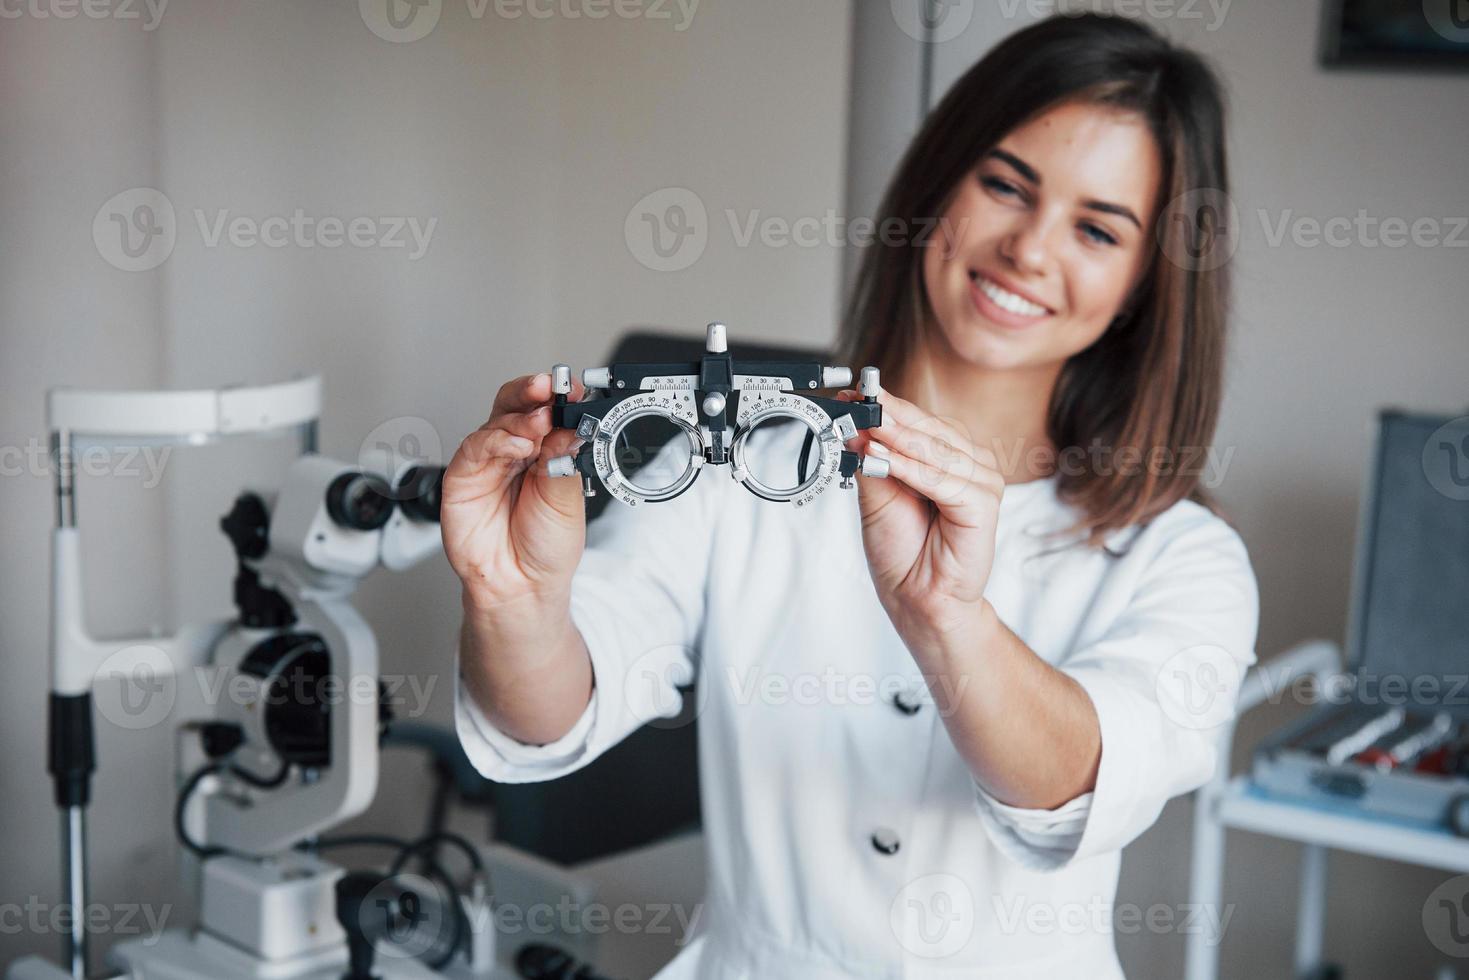 annan utrustning i rummet. ung attraktiv kvinnlig ögonläkare med speciell anordning för att testa ögon som står på kontoret foto